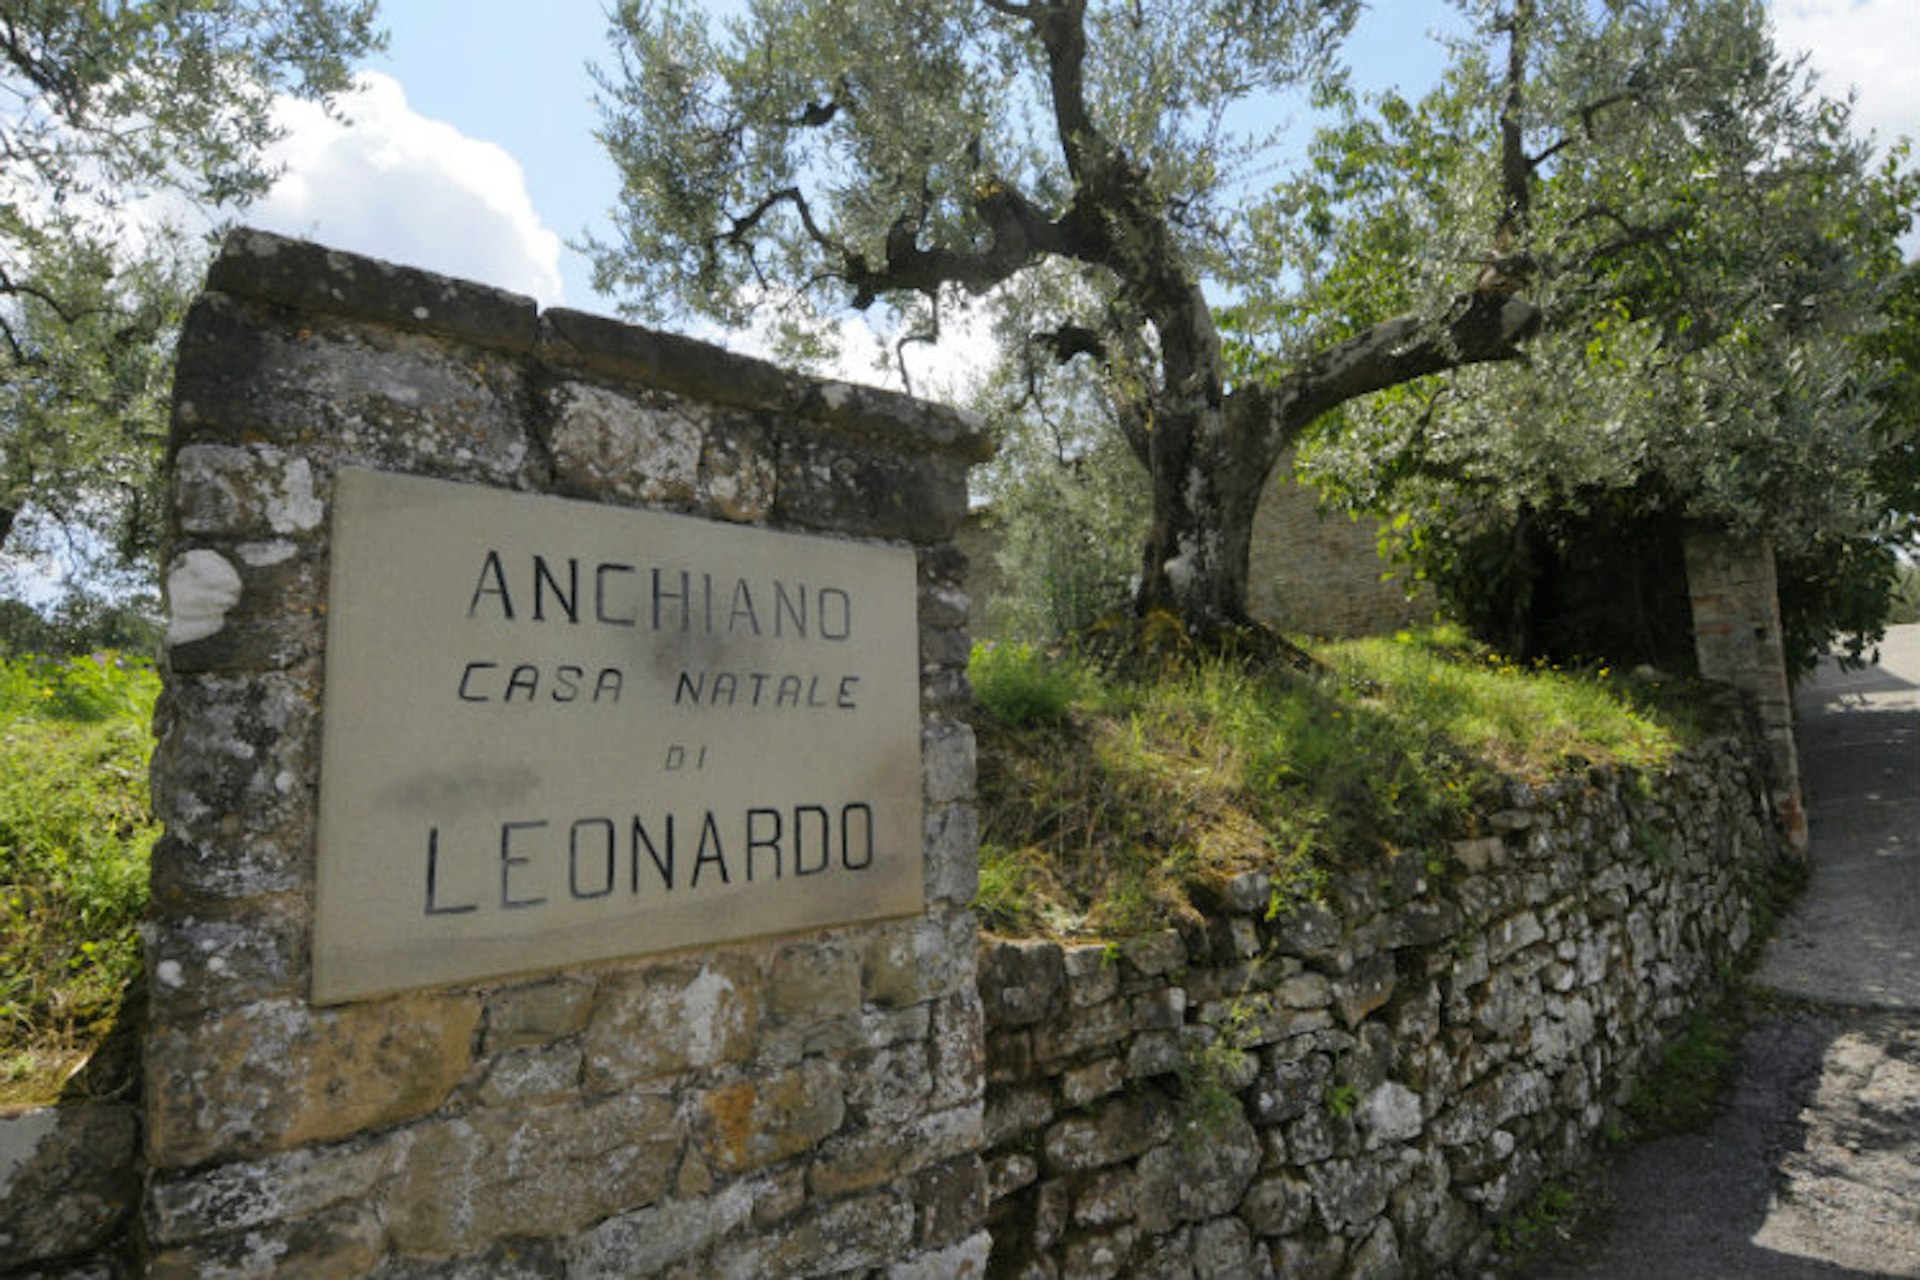 A sign marking the birthplace of Leonardo da Vinci in Anchiano, Italy.